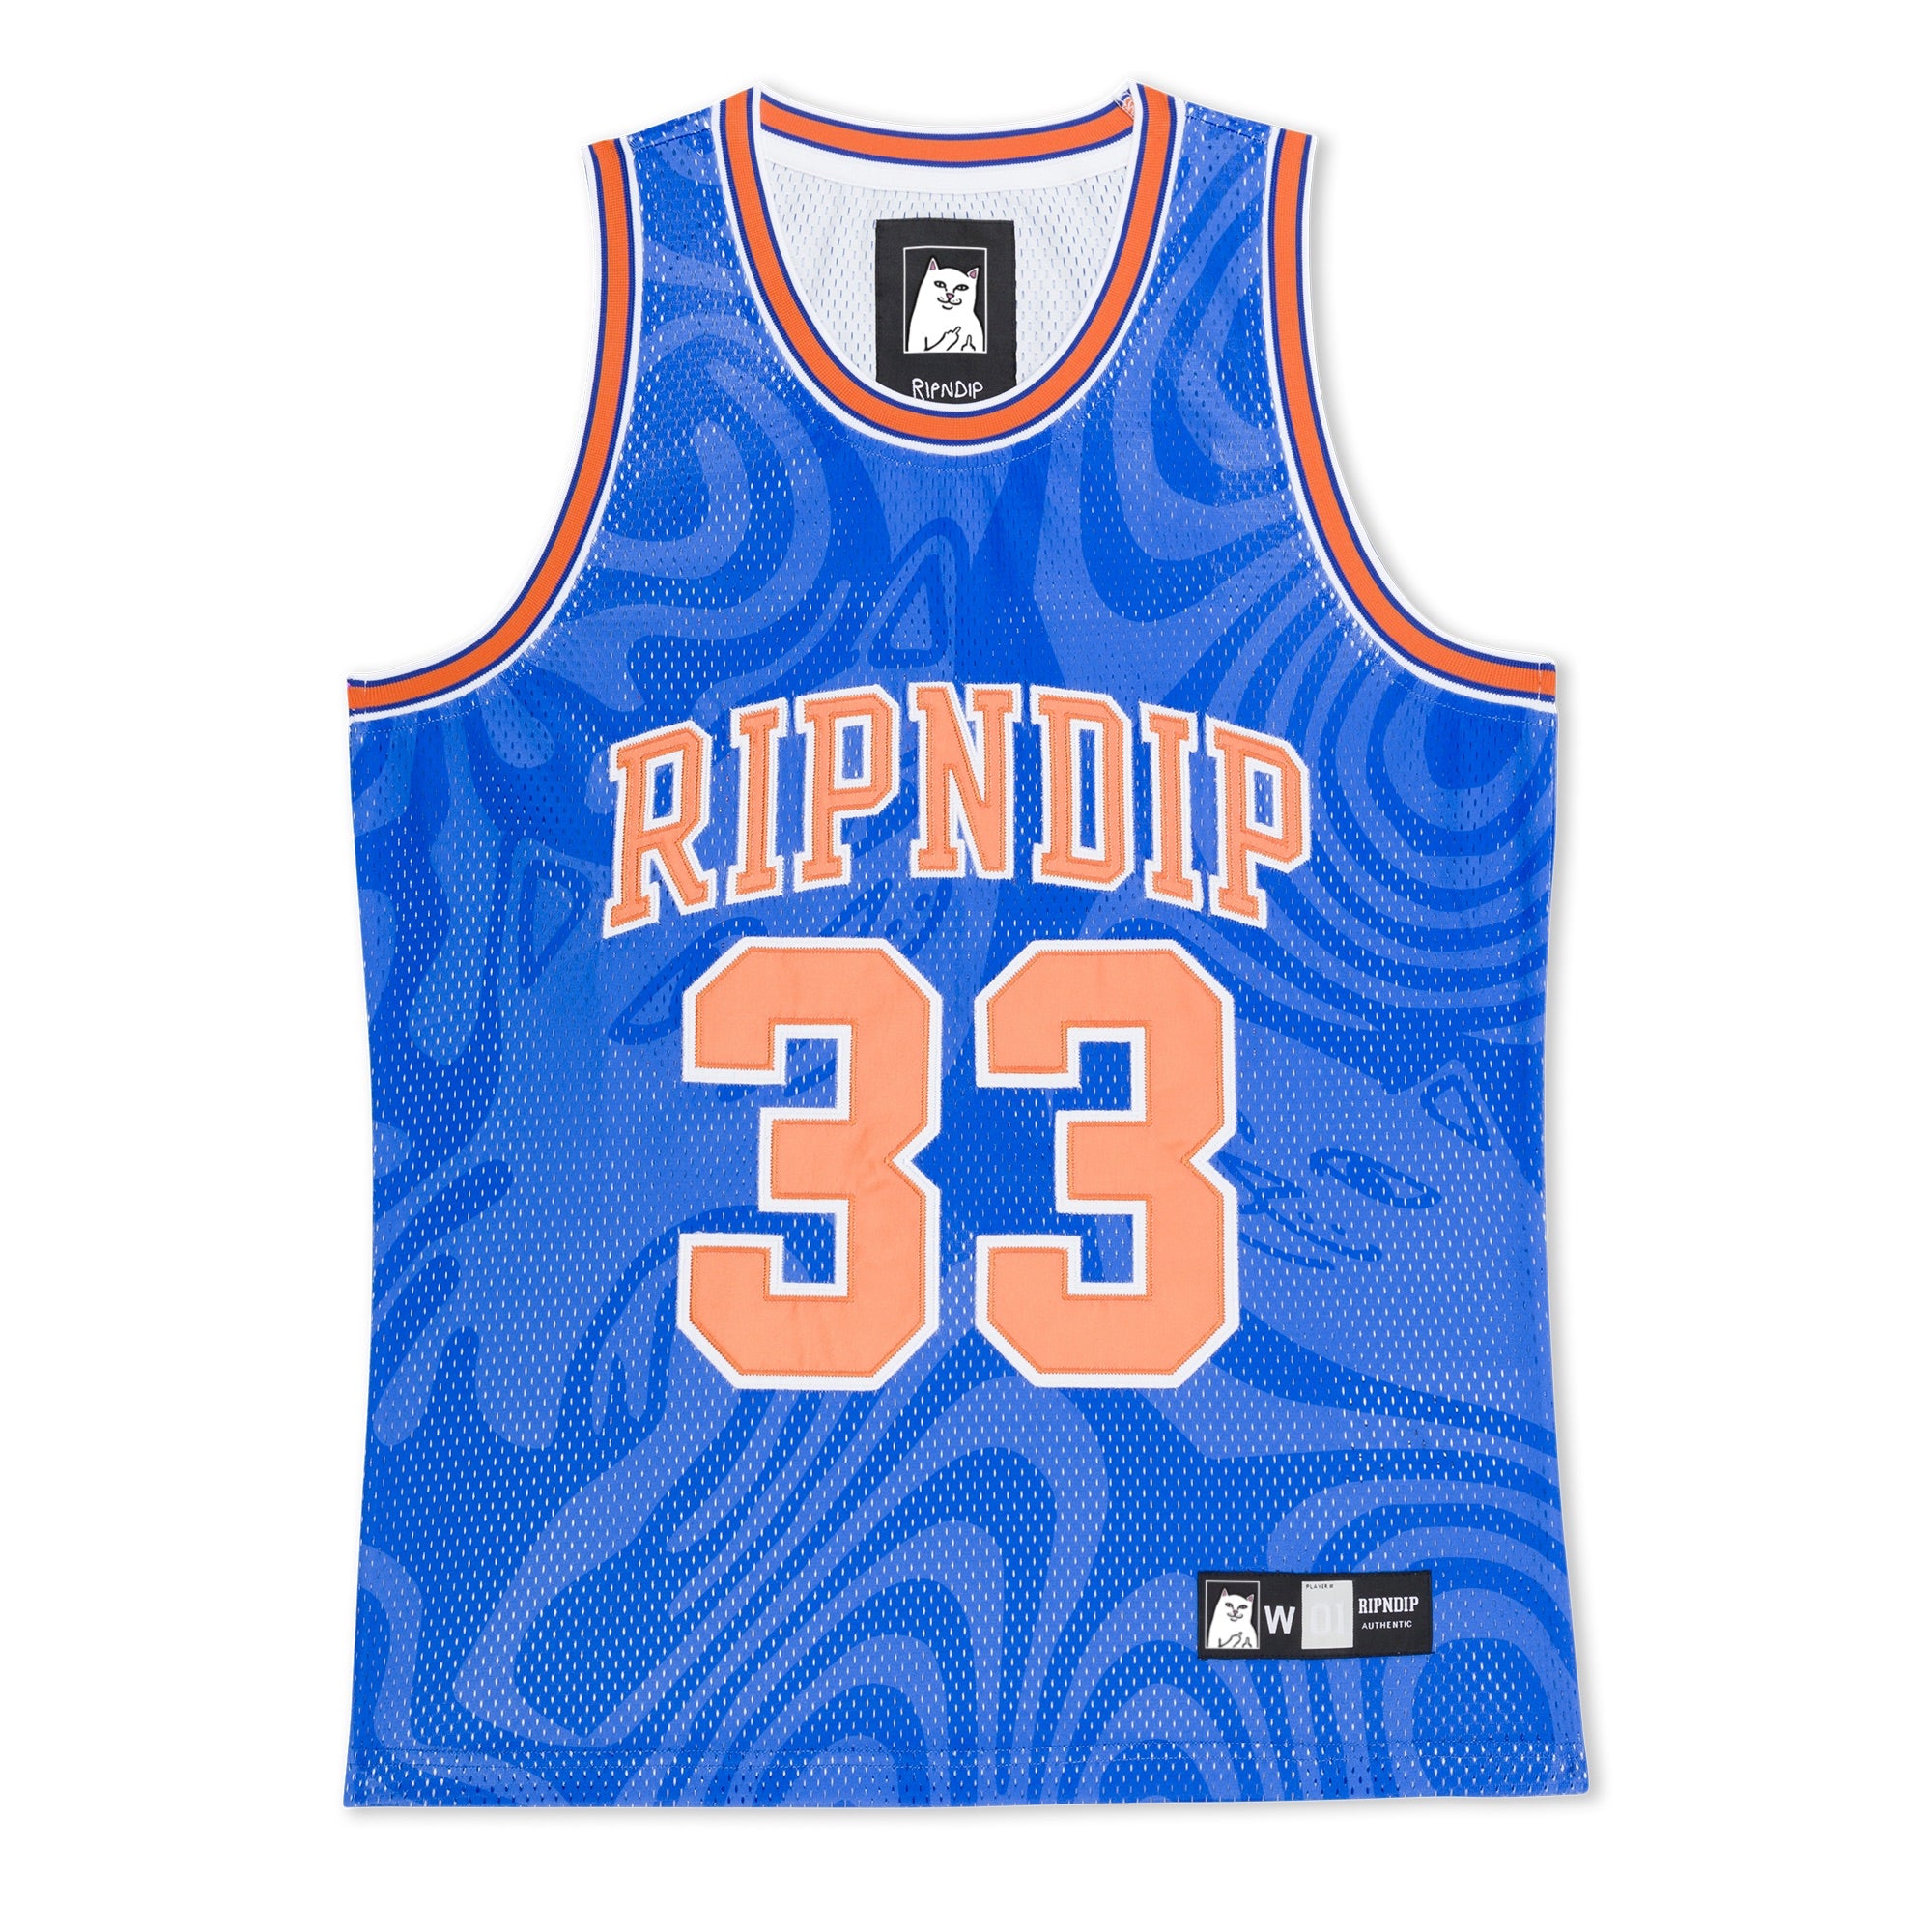 RIPNDIP Ripndip NY Basketball Jersey (Blue)